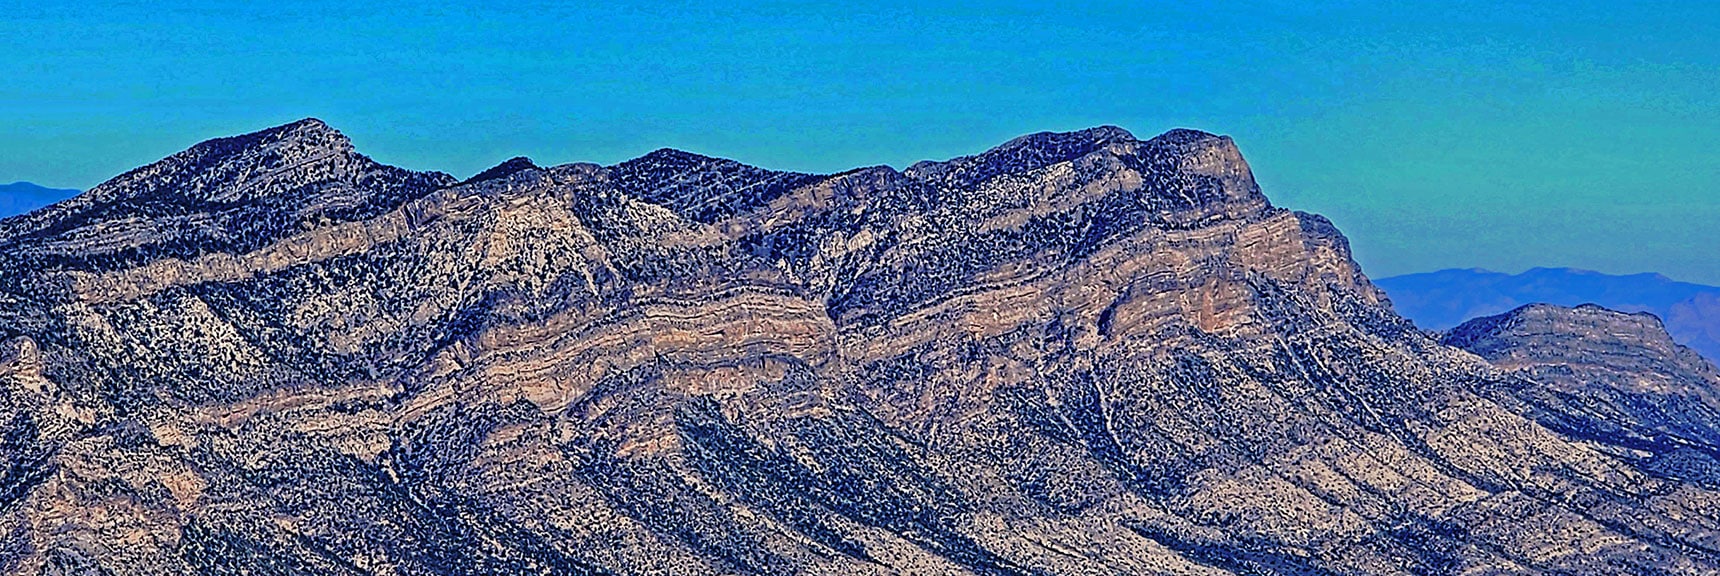 La Madre Mts: La Madre, El Padre, Burnt Peak, El Bastardo | Red Rock Summit Loop | Wilson Ridge | Lovell Canyon, Nevada